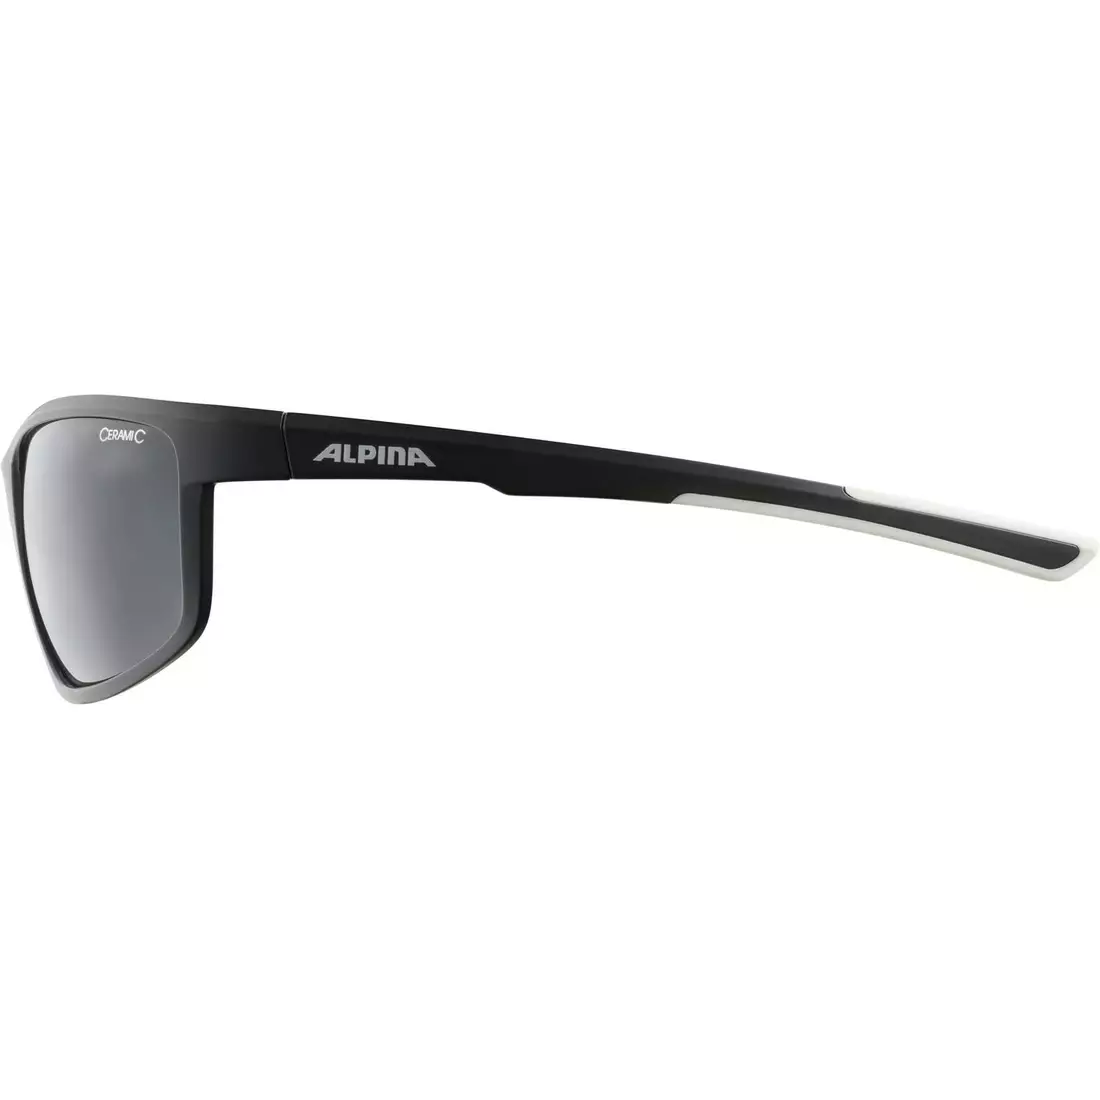 ALPINA DEFEY kerékpáros/sport szemüveg, black-white matt